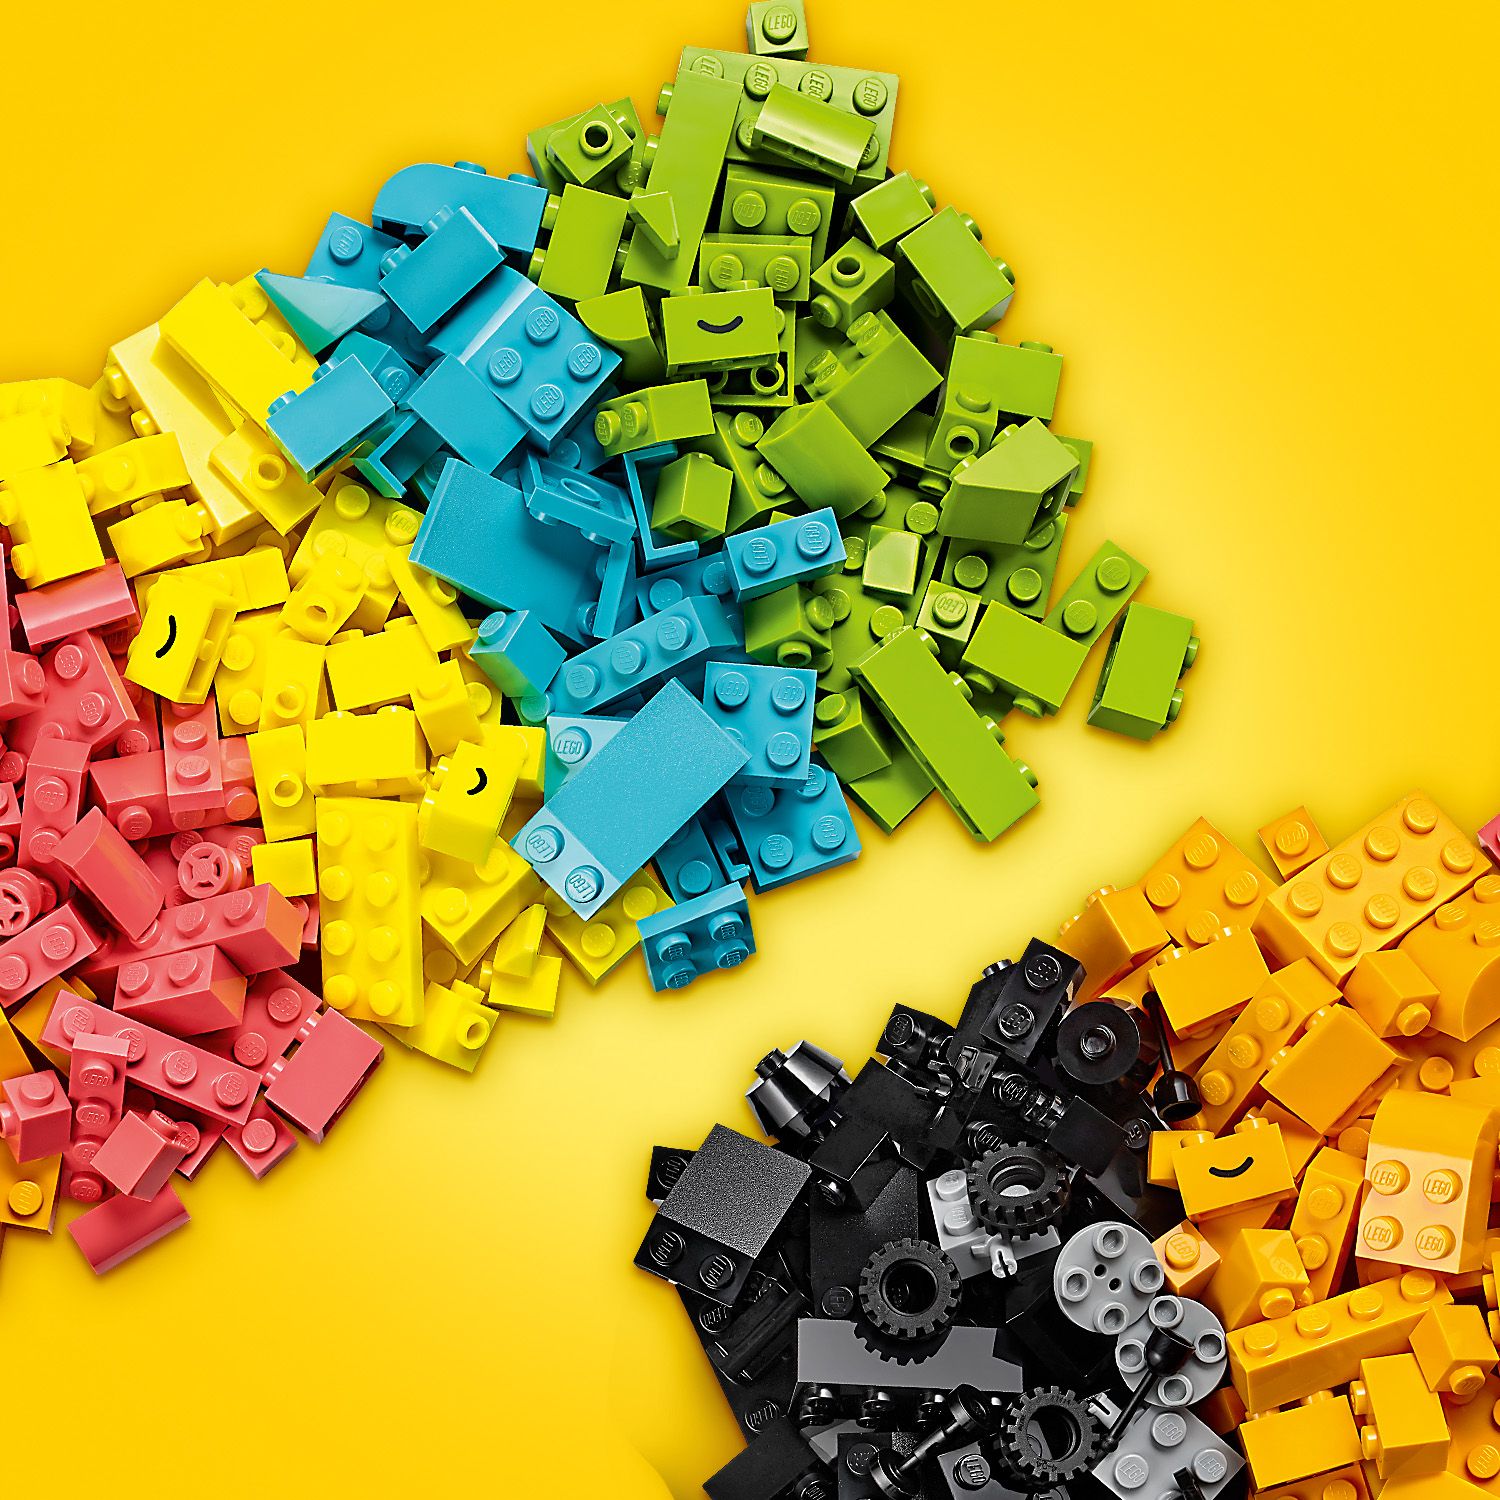 LEGO Classic 11027 - L’amusement créatif fluo pas cher 